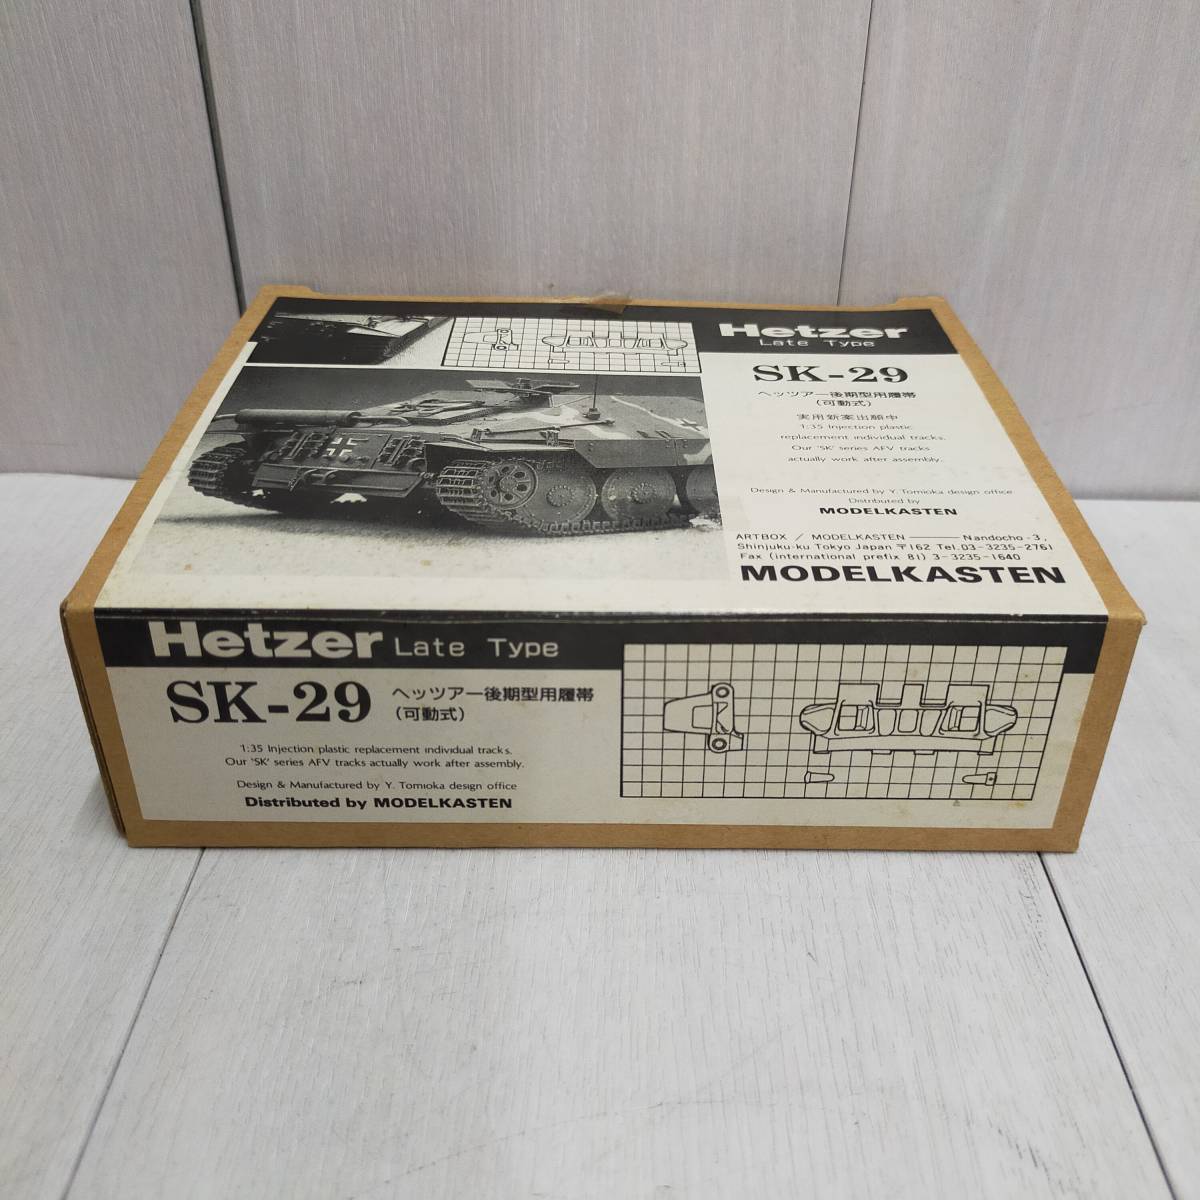 【 送料無料 】 未組立 ◆ MODEL KASTEN SK-29 ヘッツァー 後期型用履帯 可動式 モデル カステン Hetzer Late Type キャタピラ 模型 趣味_画像2